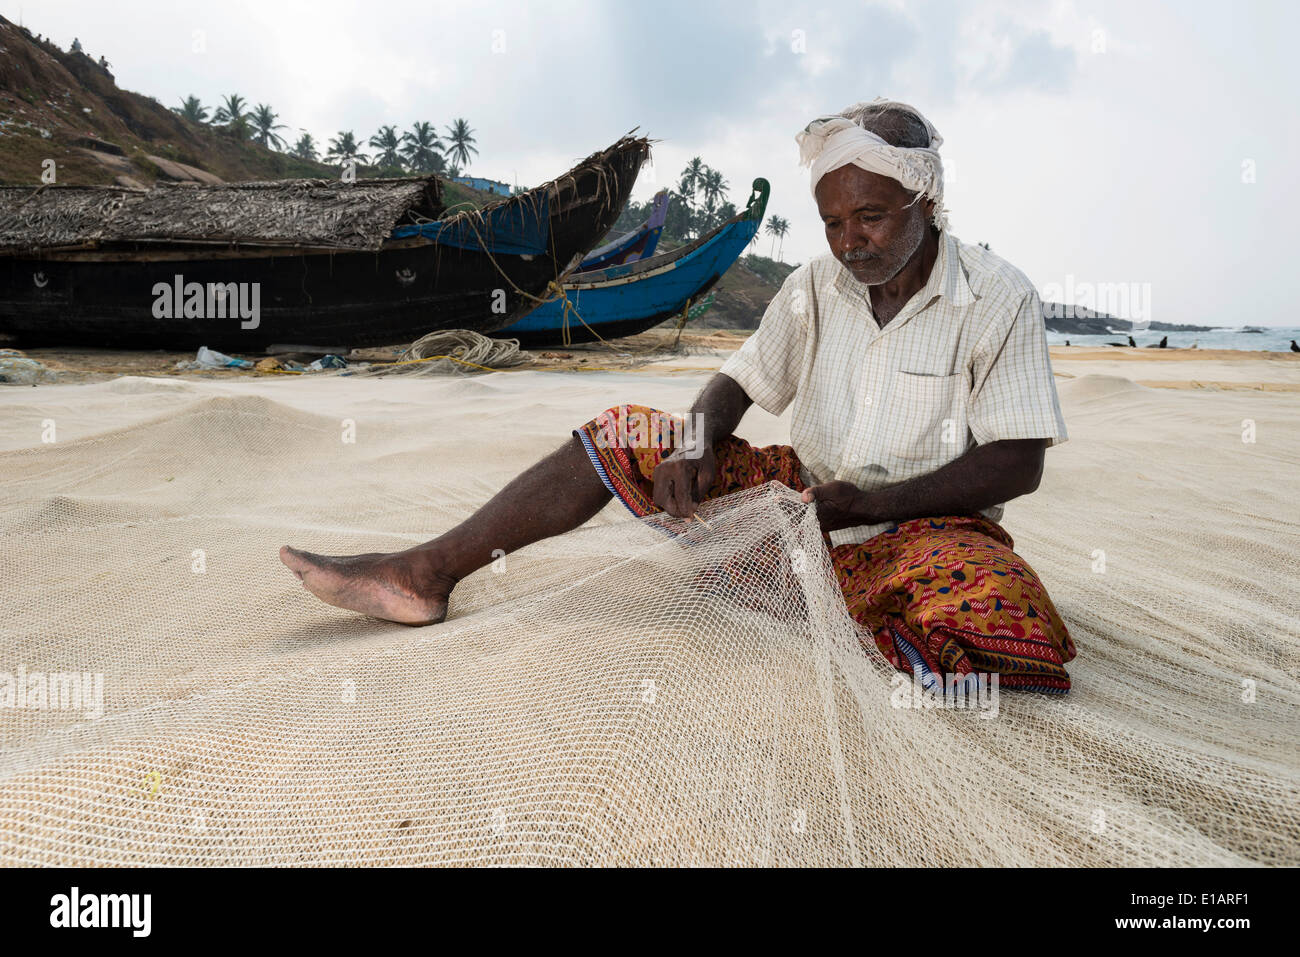 Fisherman repairing fishing nets on the beach, Vizhinjam, Kerala, India Stock Photo